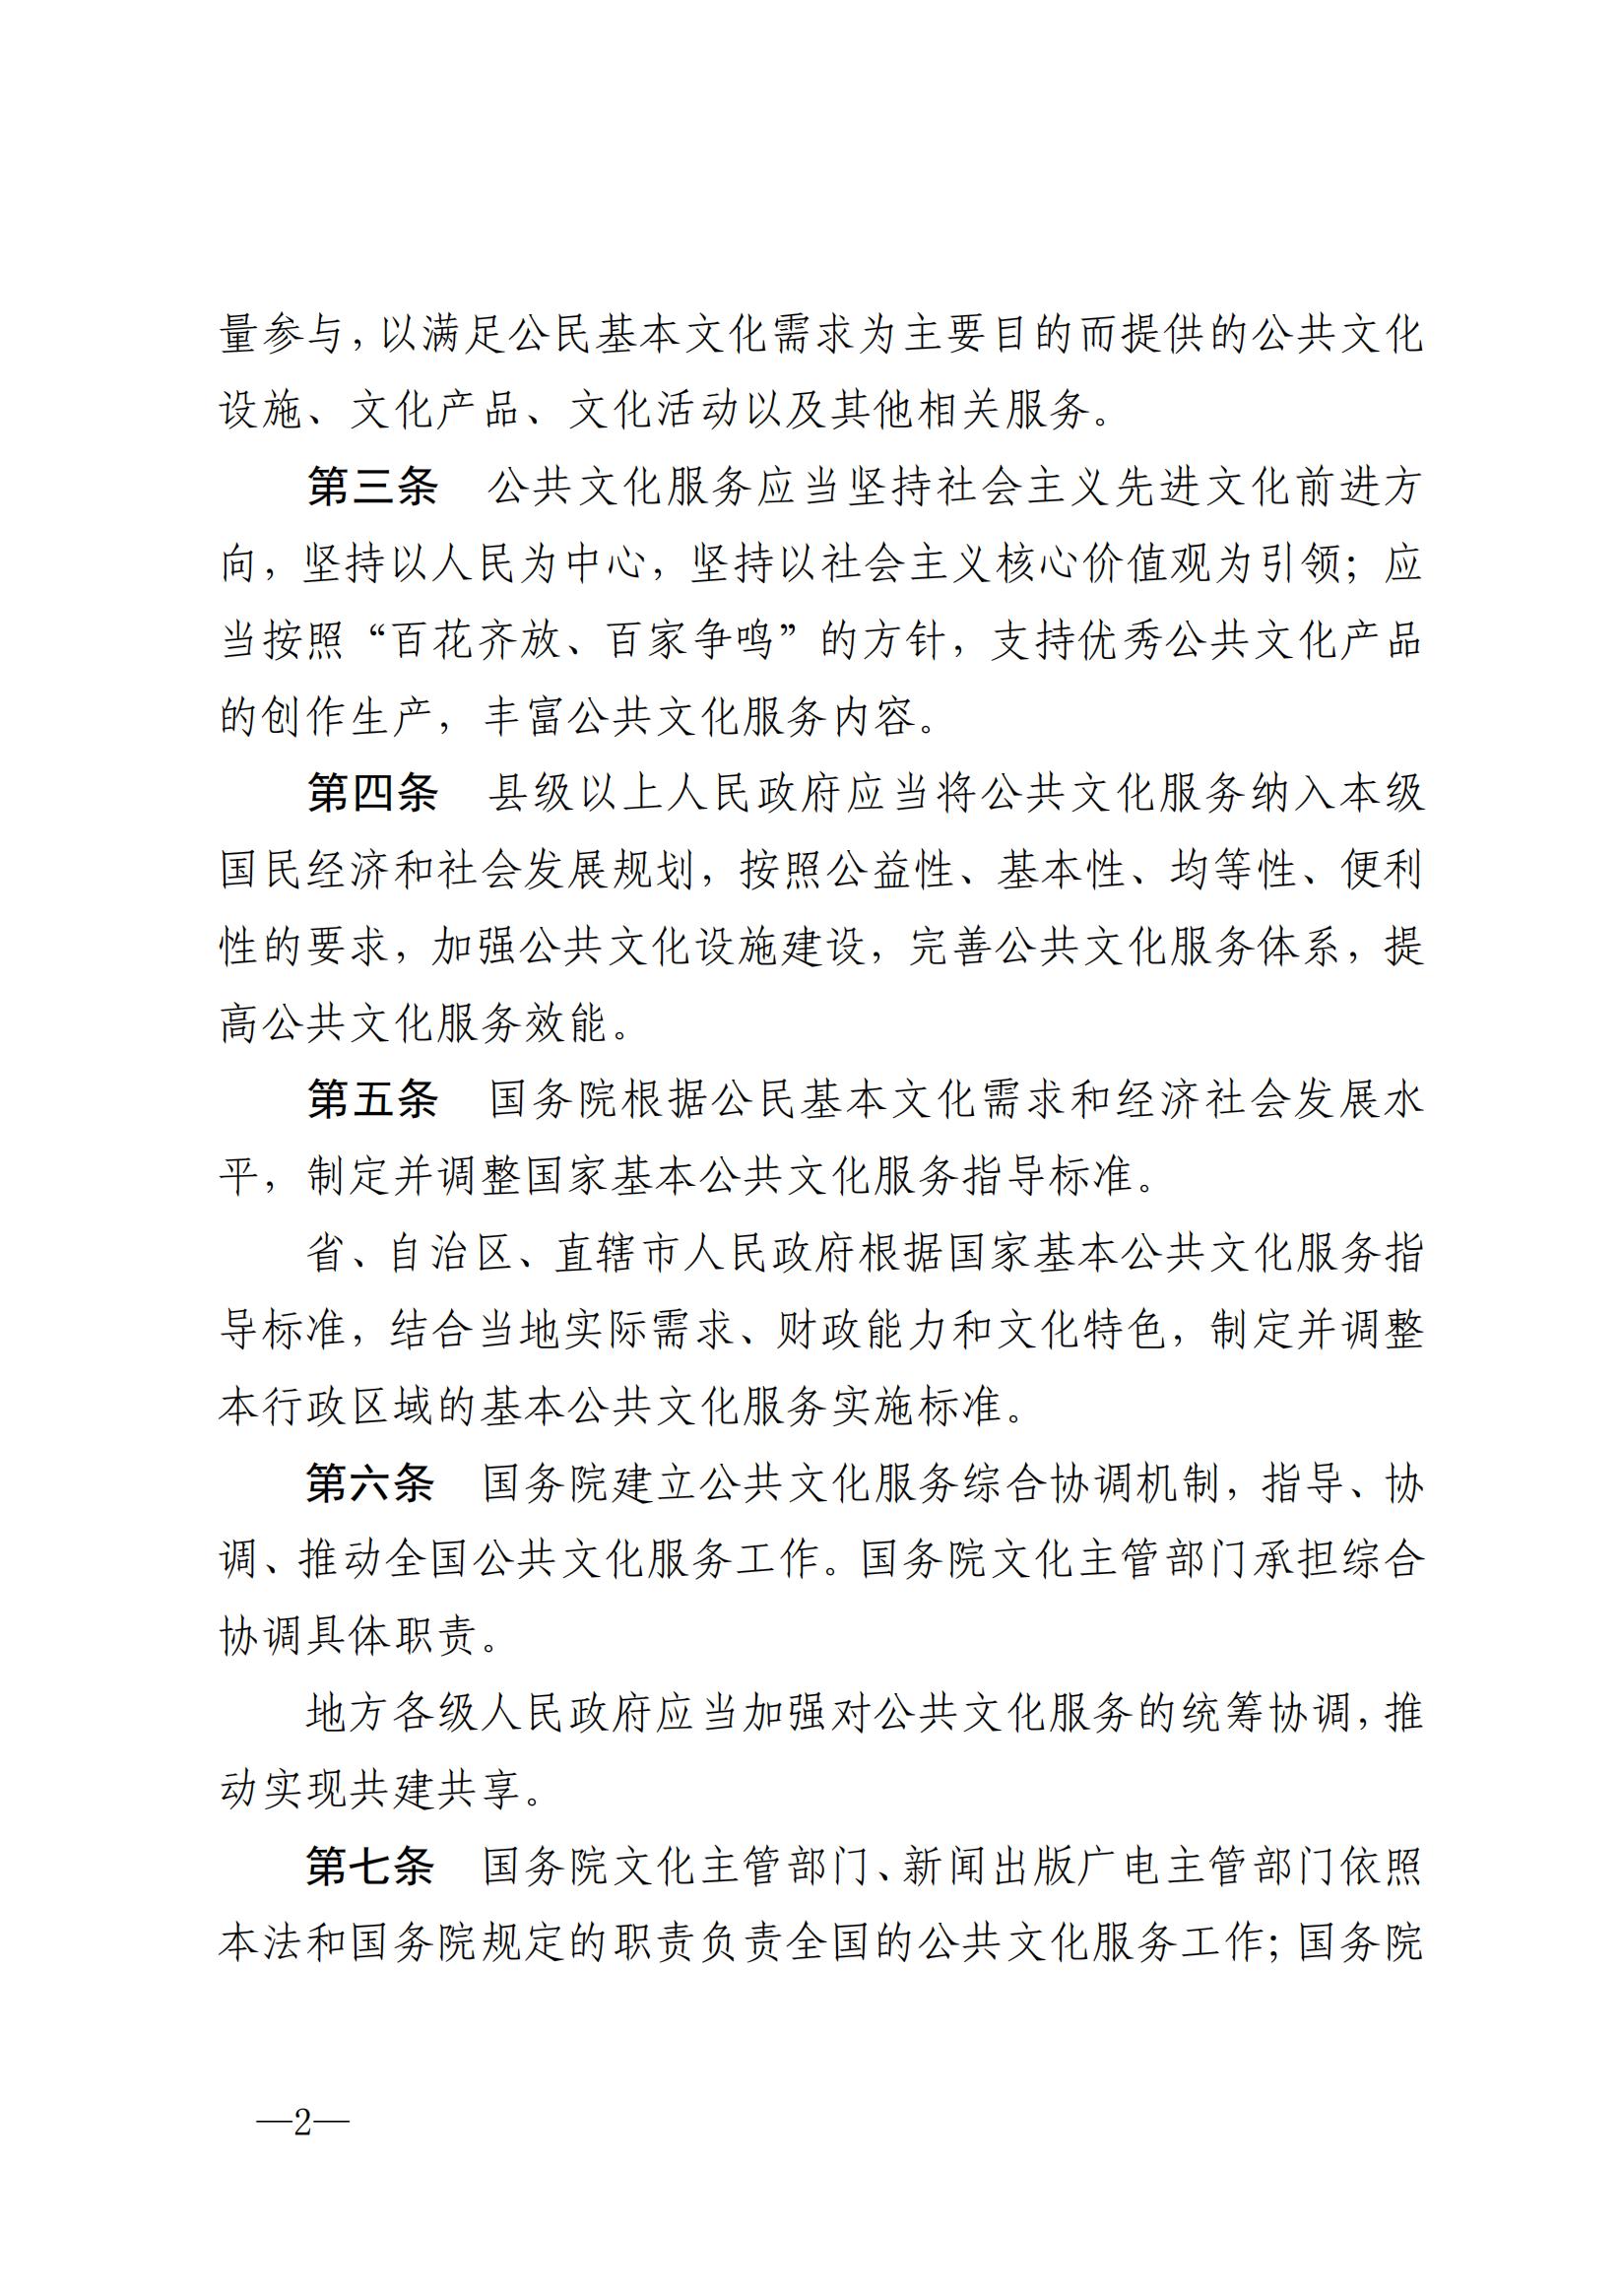 中华人民共和国公共文化服务保障法_01.jpg